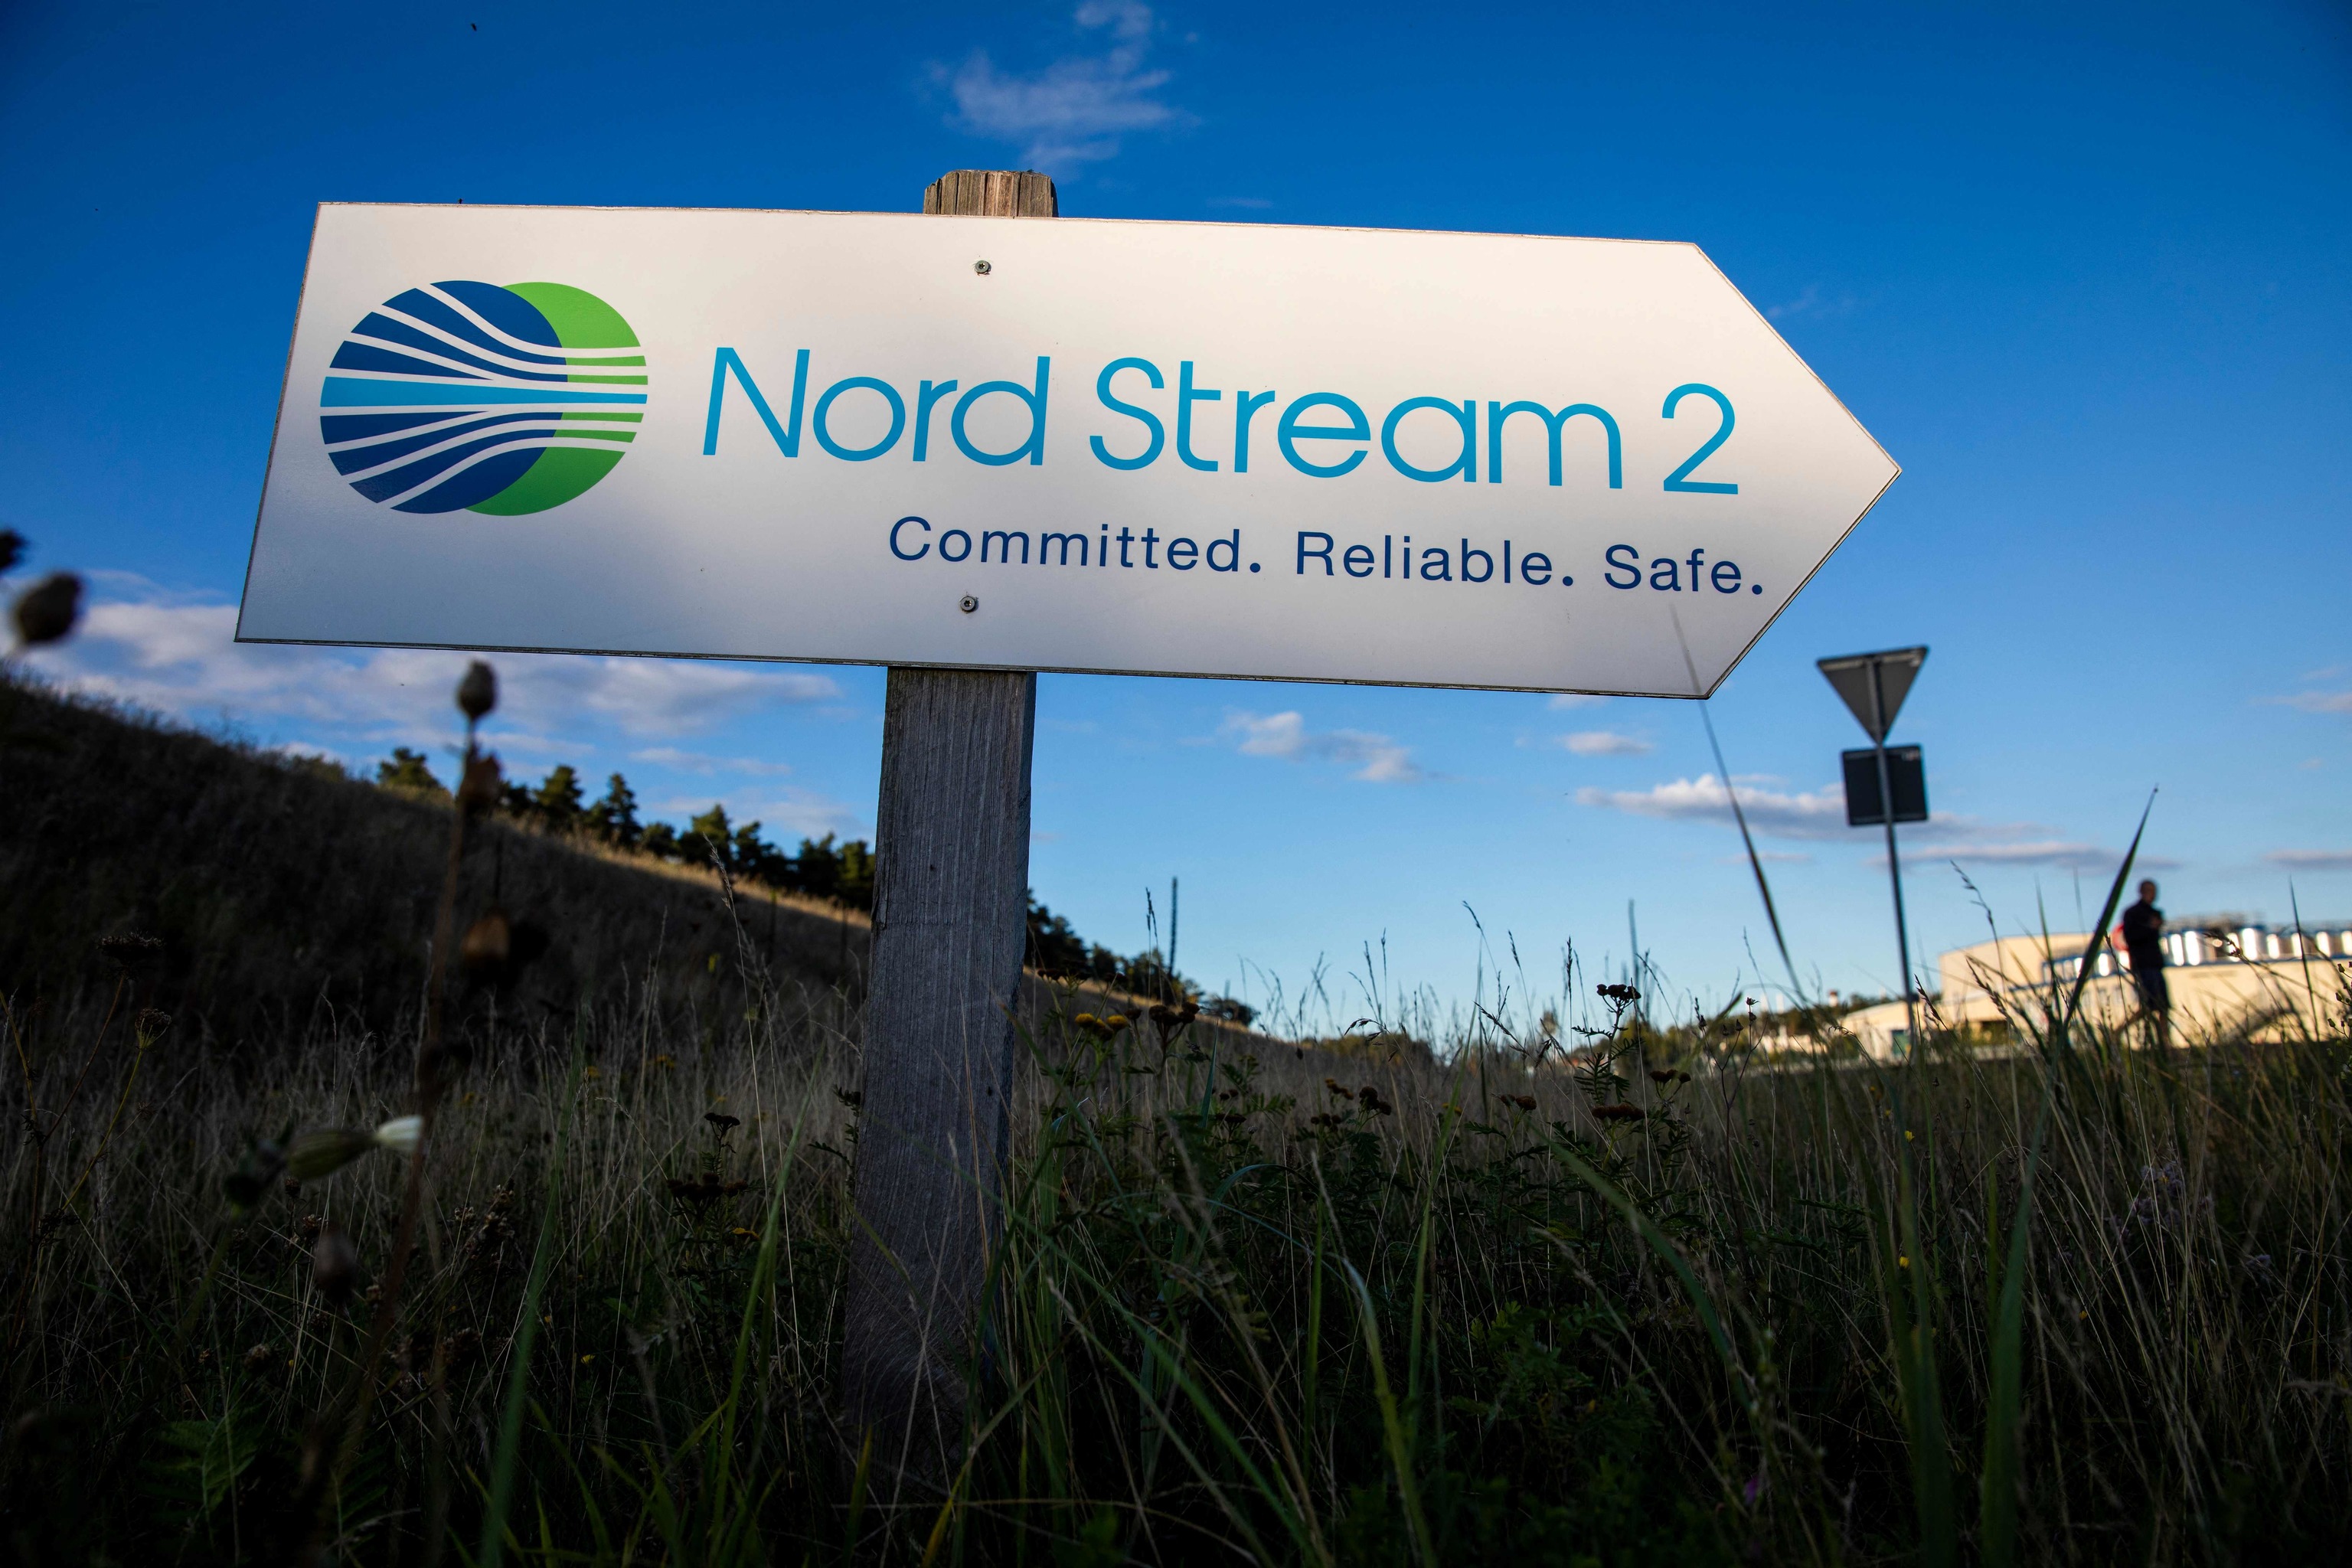 Foto de archivo tomada el 7 de septiembre de 2020 muestra una señal de carretera que dirige el tráfico hacia la entrada de la instalación de aterrizaje del gasoducto Nord Stream 2 en Lubmin, al noreste de Alemania.